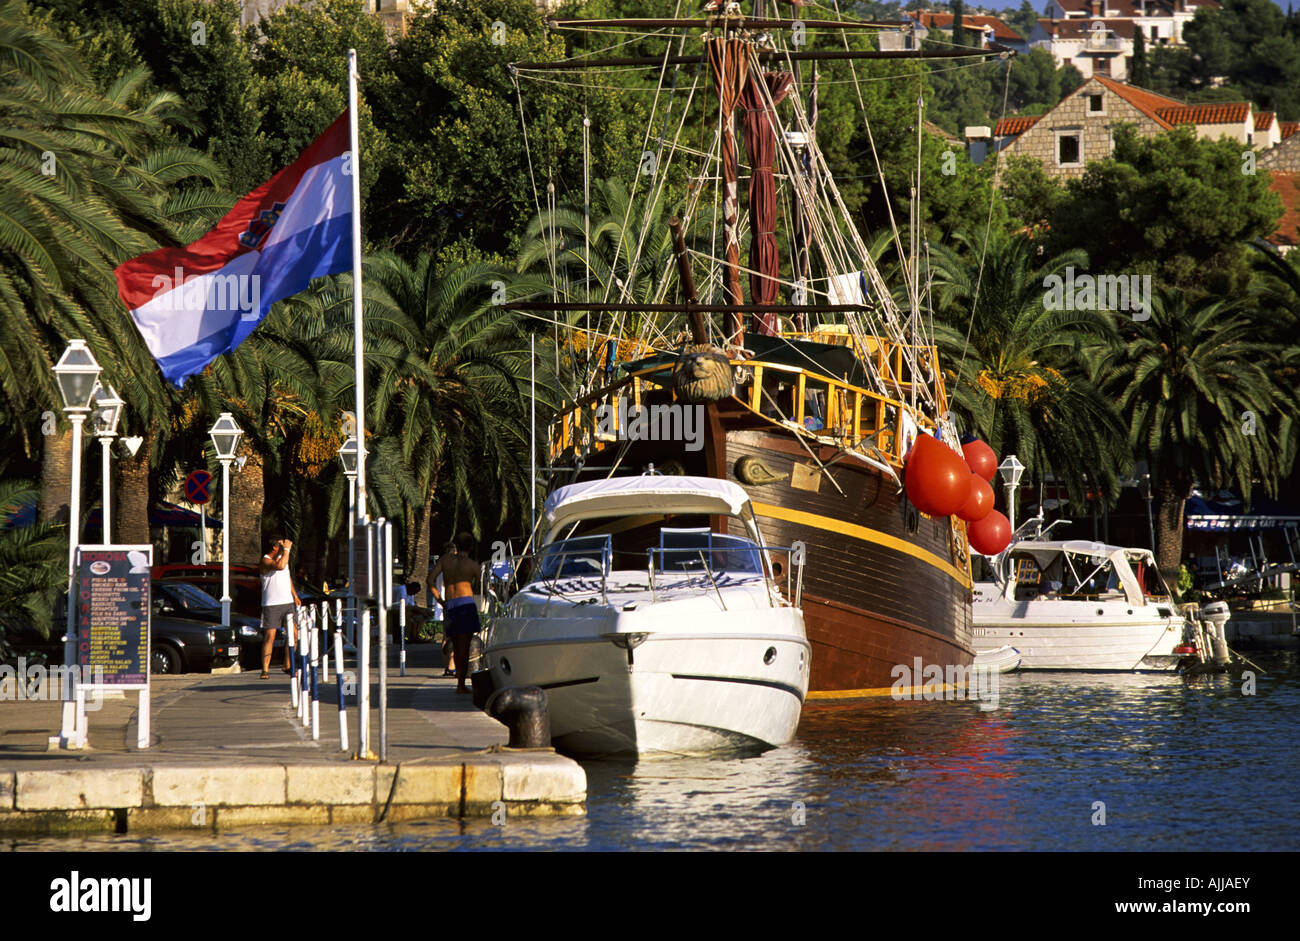 Kroatien Dalmatien Cavtat, Hafen von Cavtat | Croatia Dalmatia Cavtat, Harbor of Cavtat Stock Photo